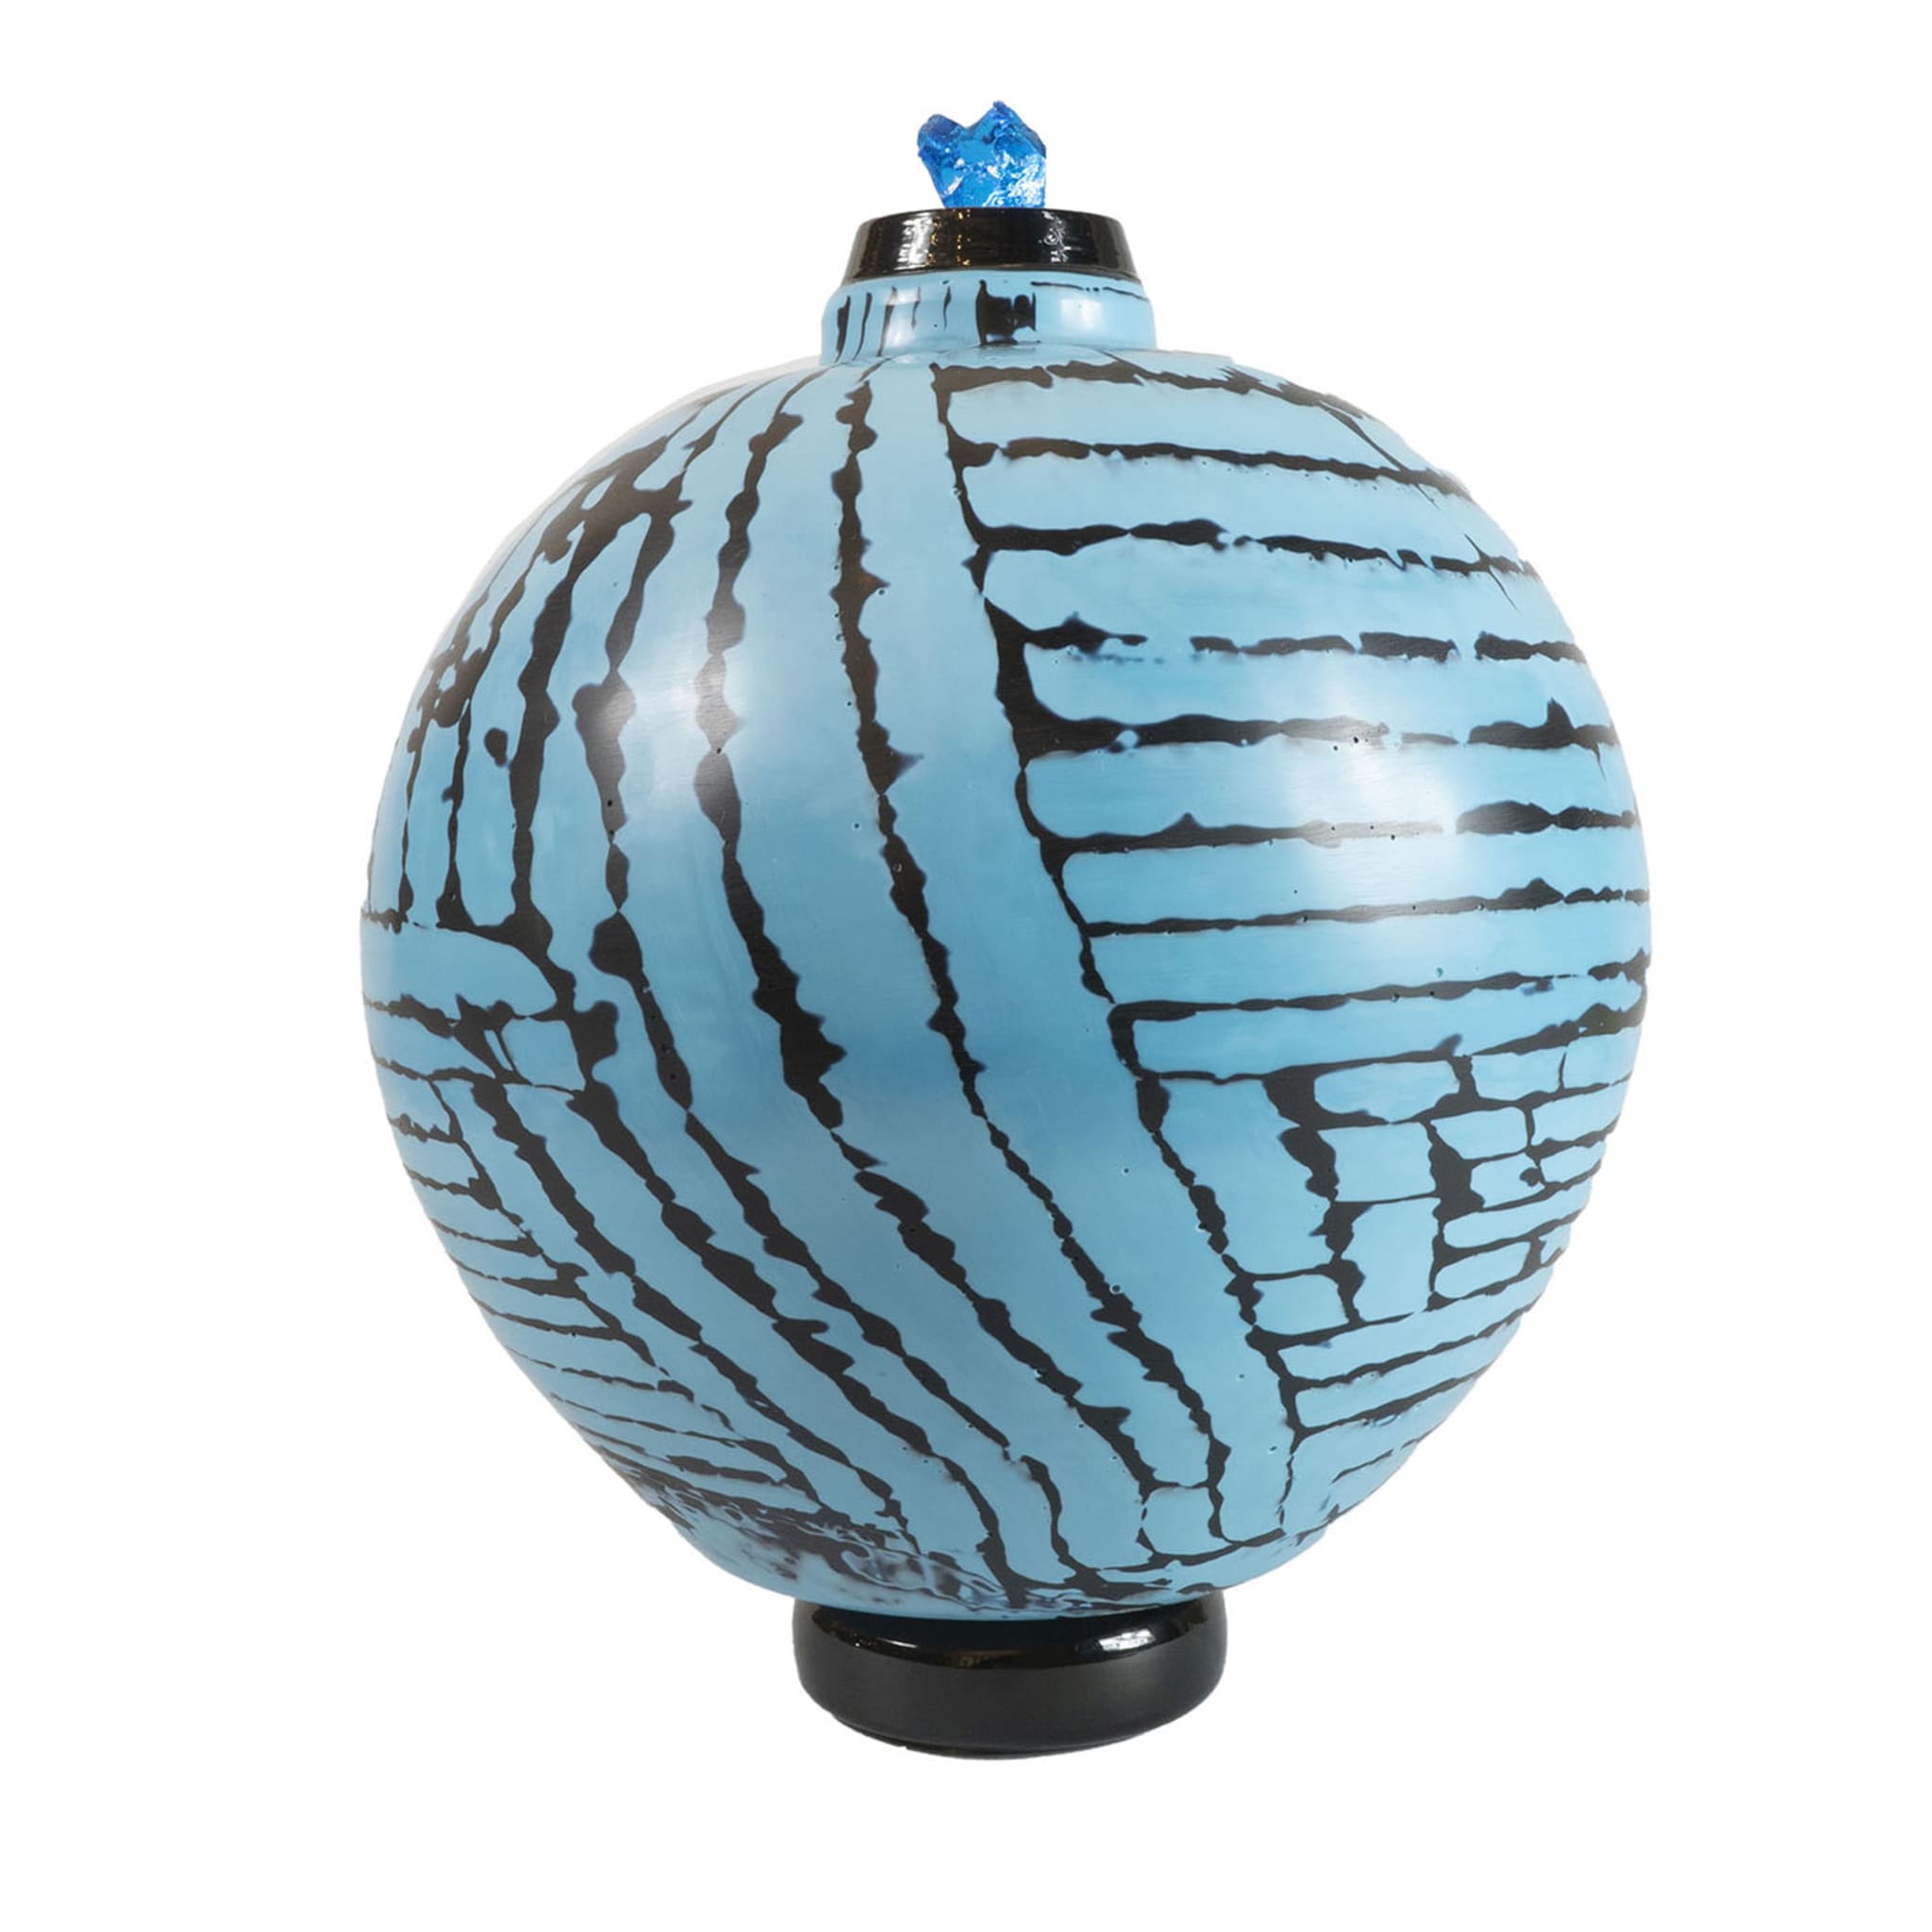 Blaue Vase der Wassermelonen-Kollektion von Tsuchida Yasuhi - Hauptansicht